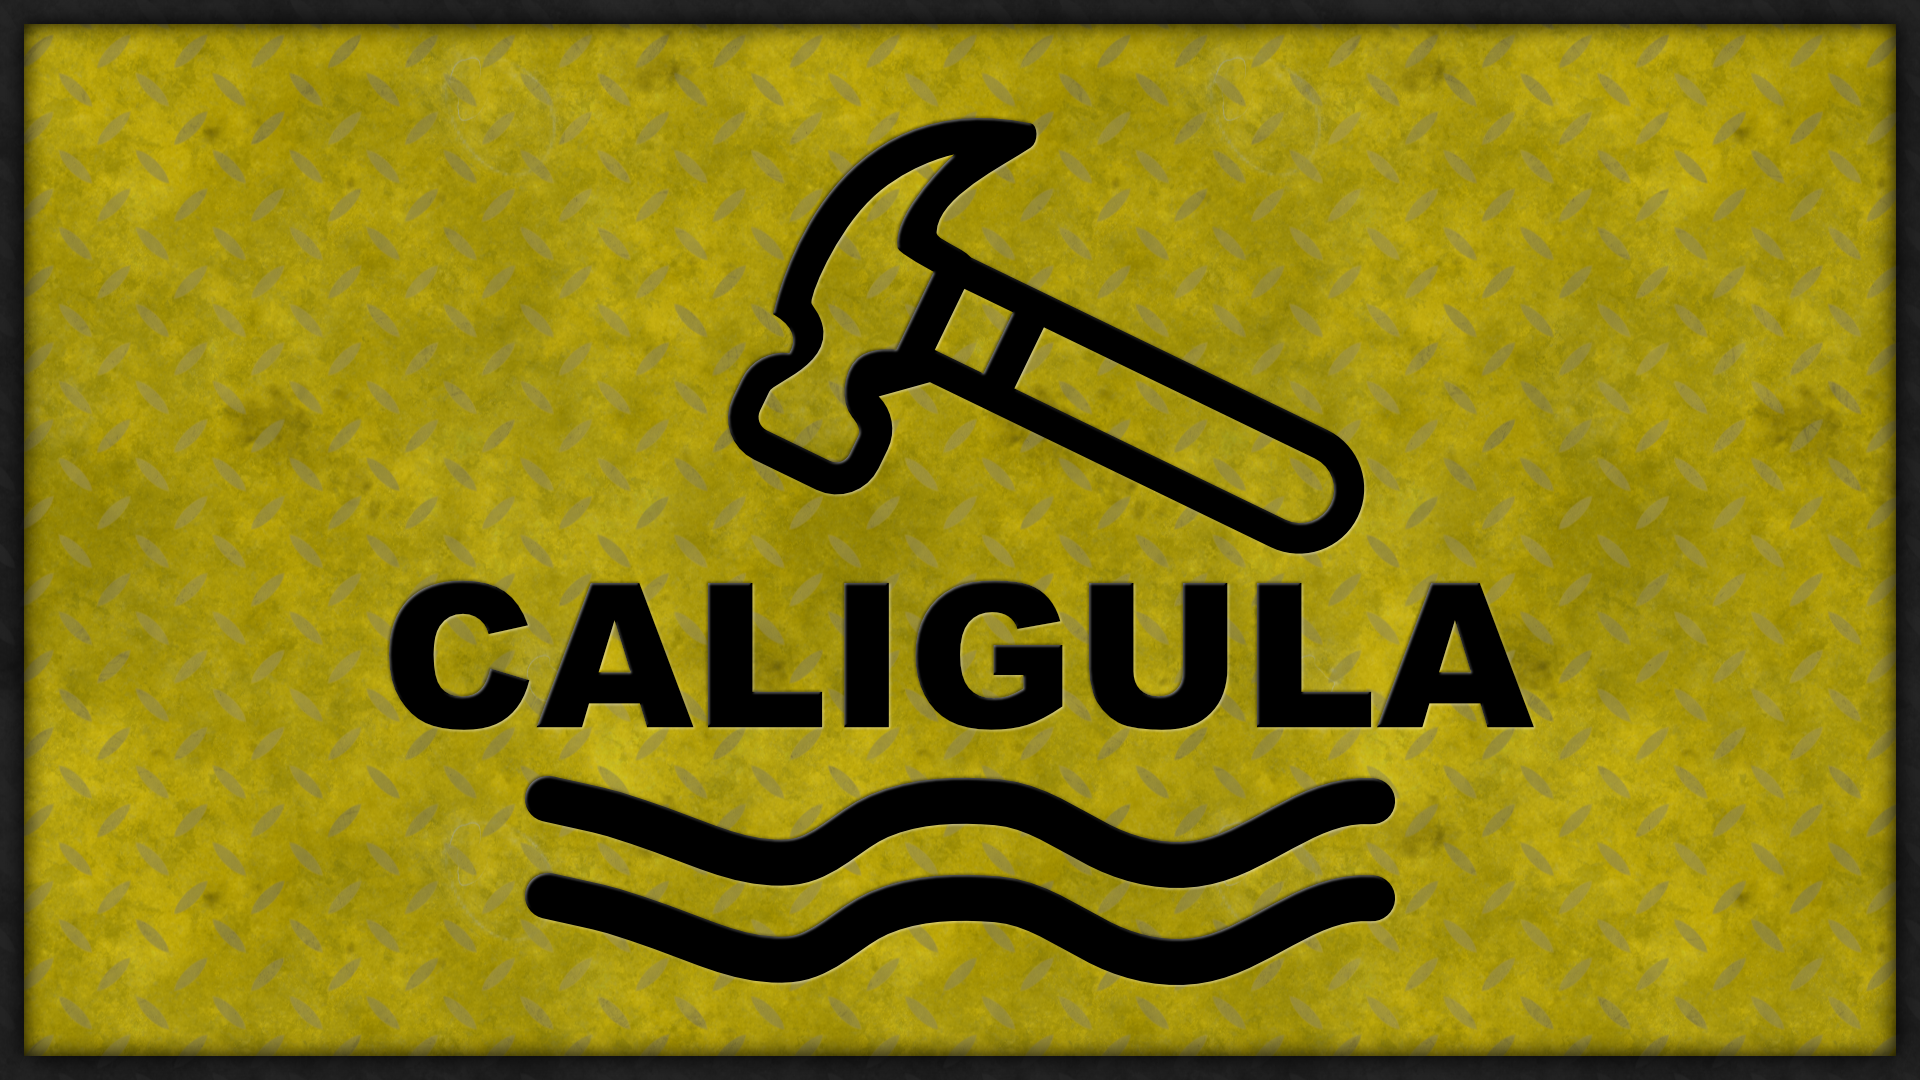 Icon for Caligula